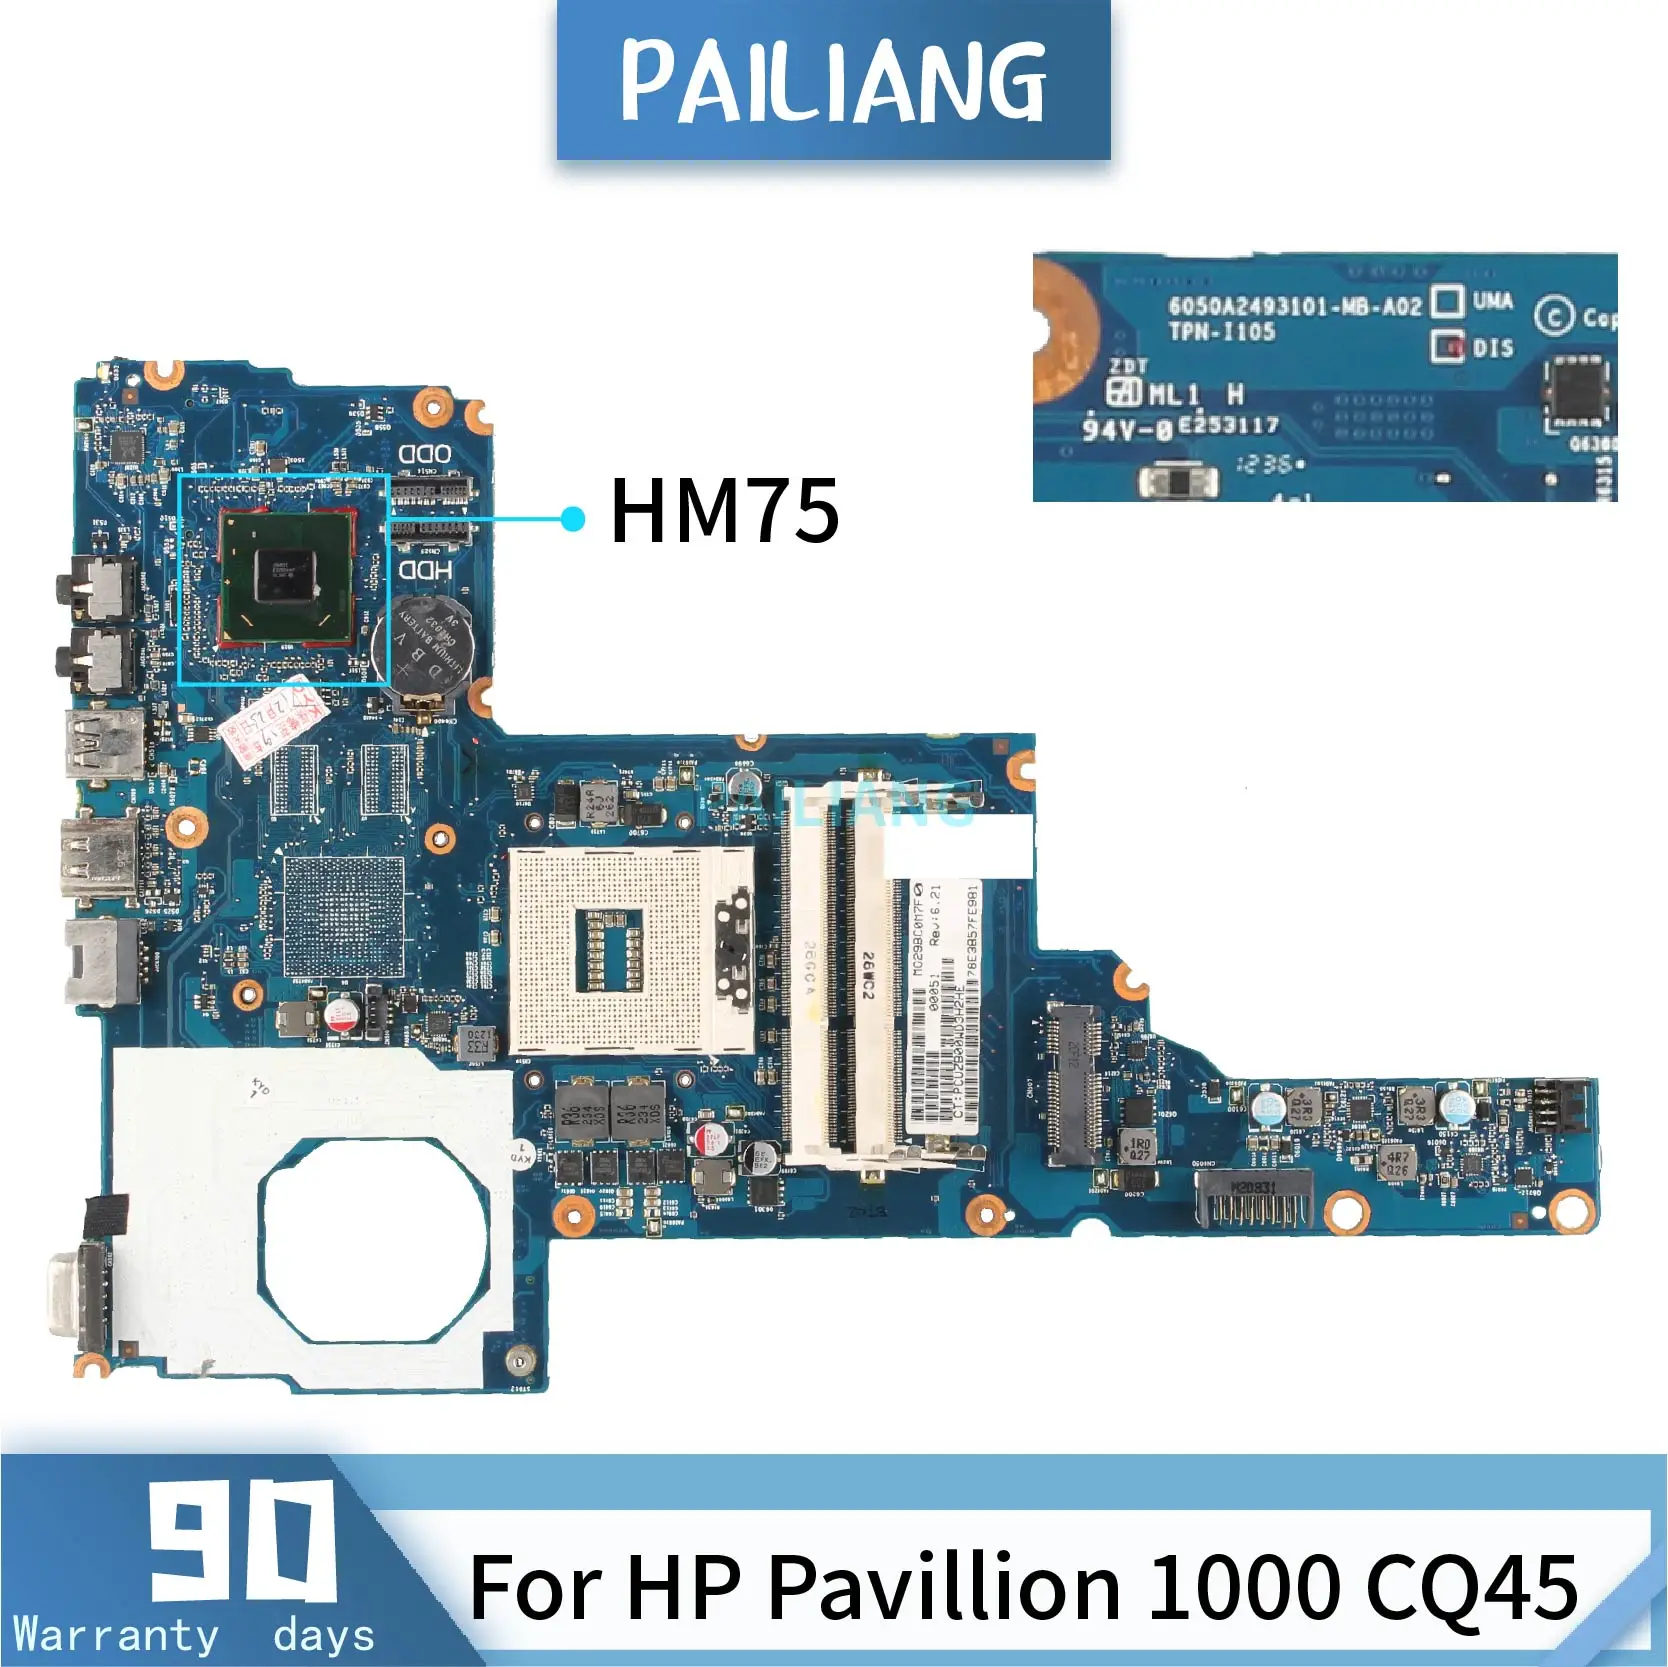 PAILIANG Notebooku základní deska Pro HP Pavilion 1000 CQ45 6050A2493101-MB-A02 základní Deska Základní SLJ8F HM75 TESTOVANÝCH DDR3 2